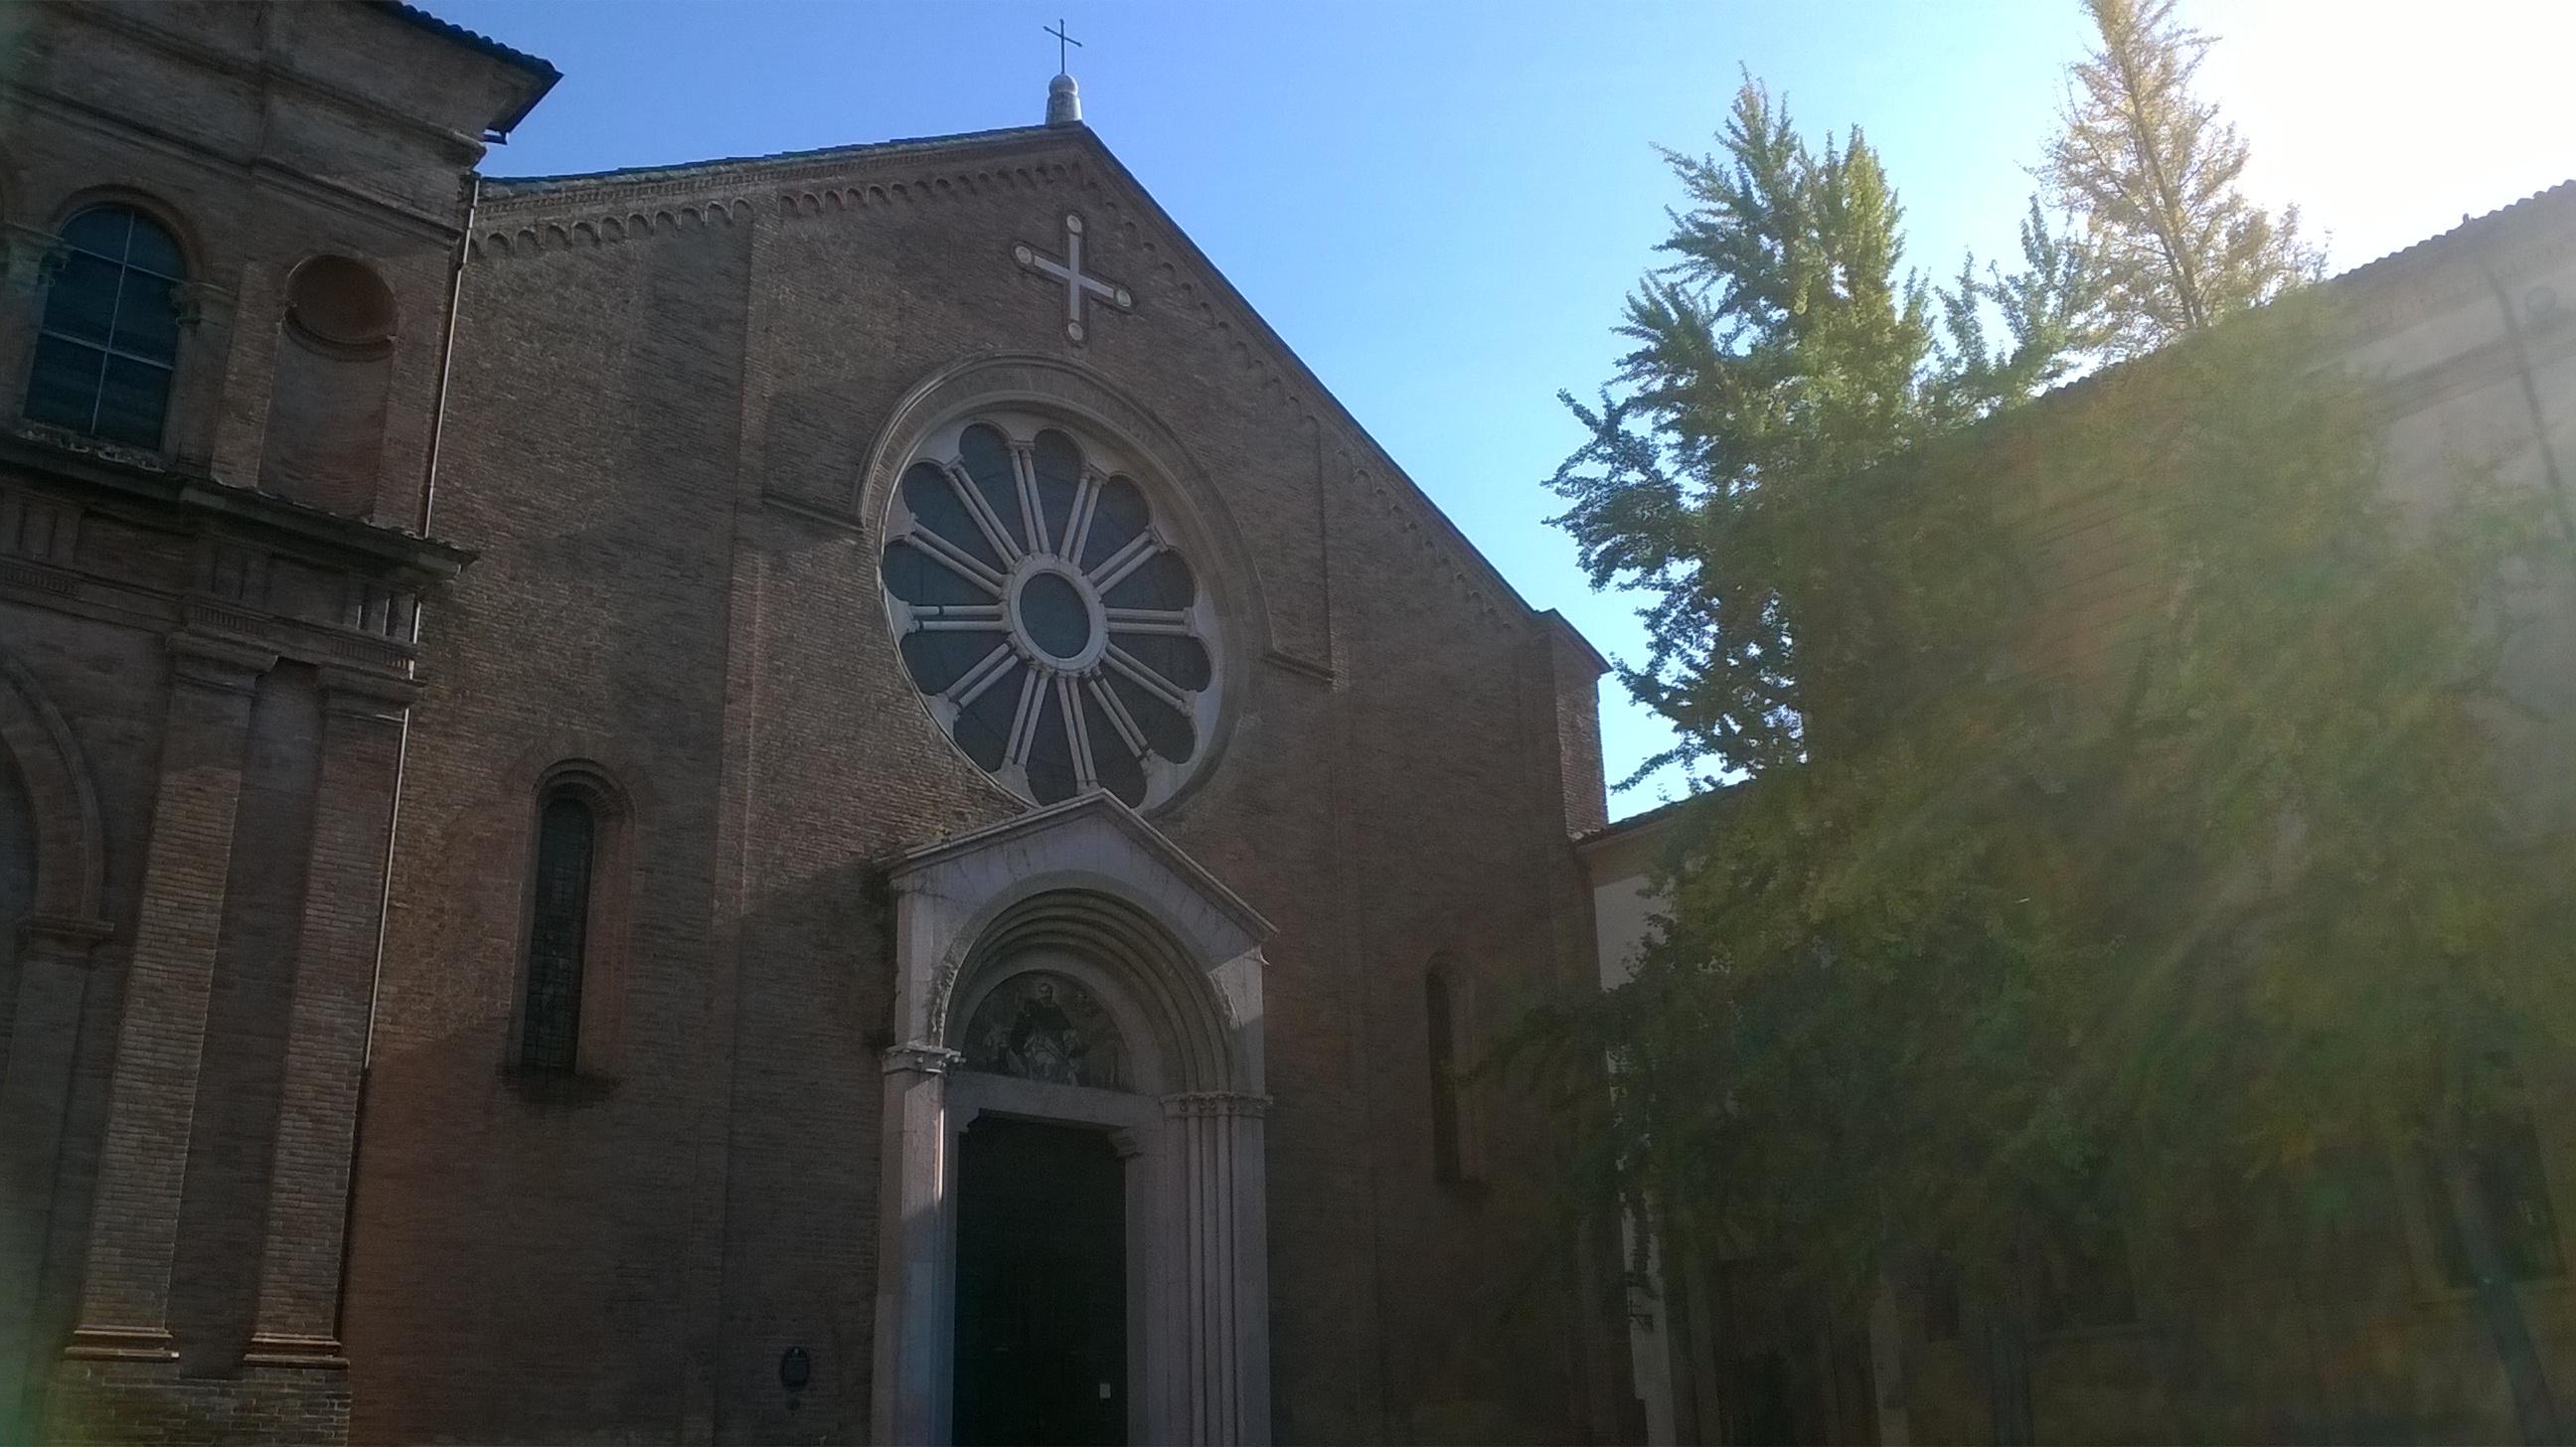 Cover image of this place Chiesa e Convento di San Domenico 